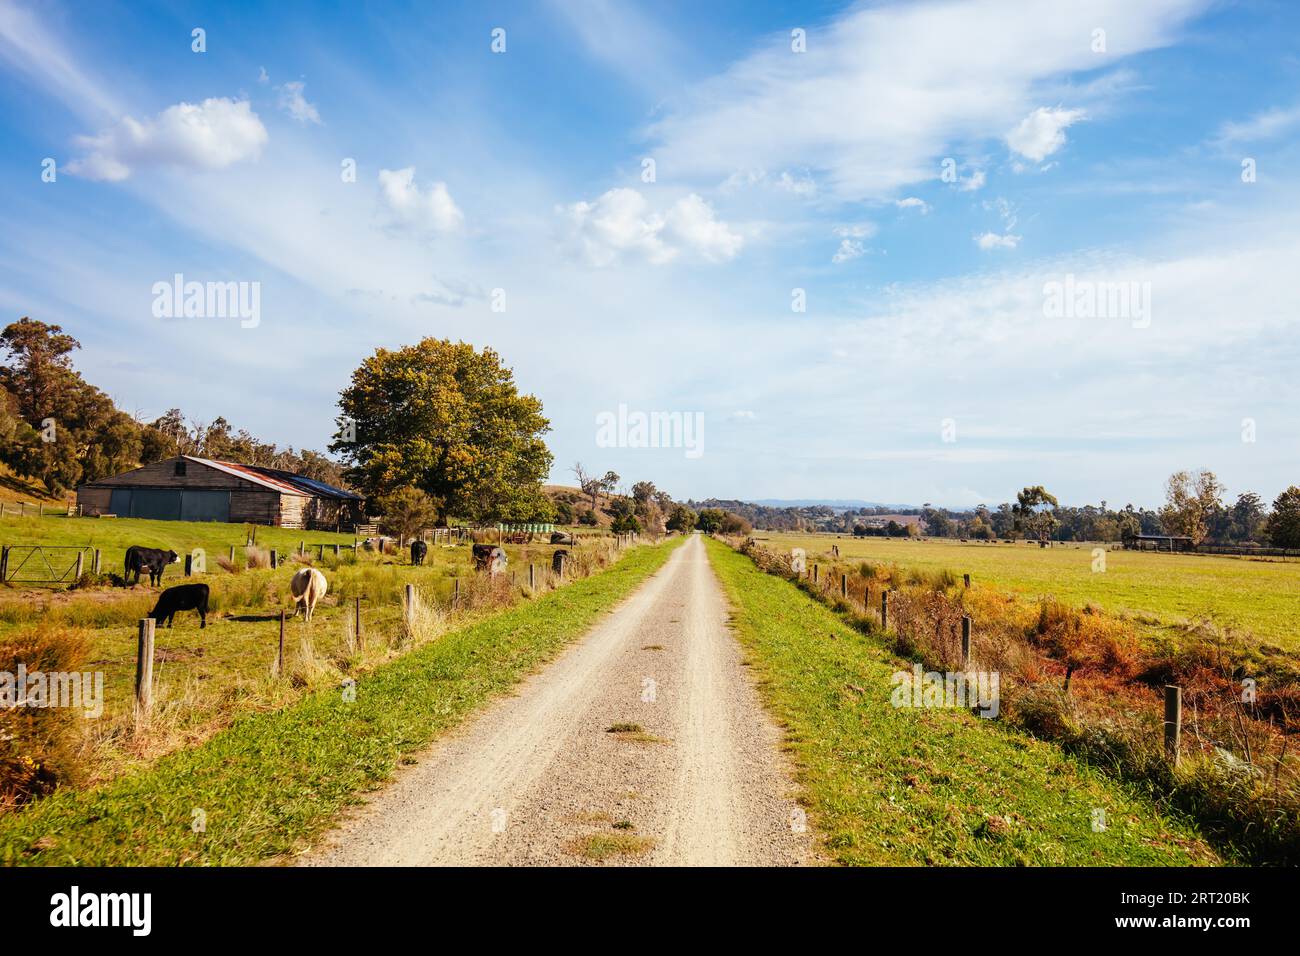 Le populaire chemin de fer de Lilydale à Warburton et le paysage rural autour de la place de lancement par une chaude journée d'automne à Victoria, Australie Banque D'Images